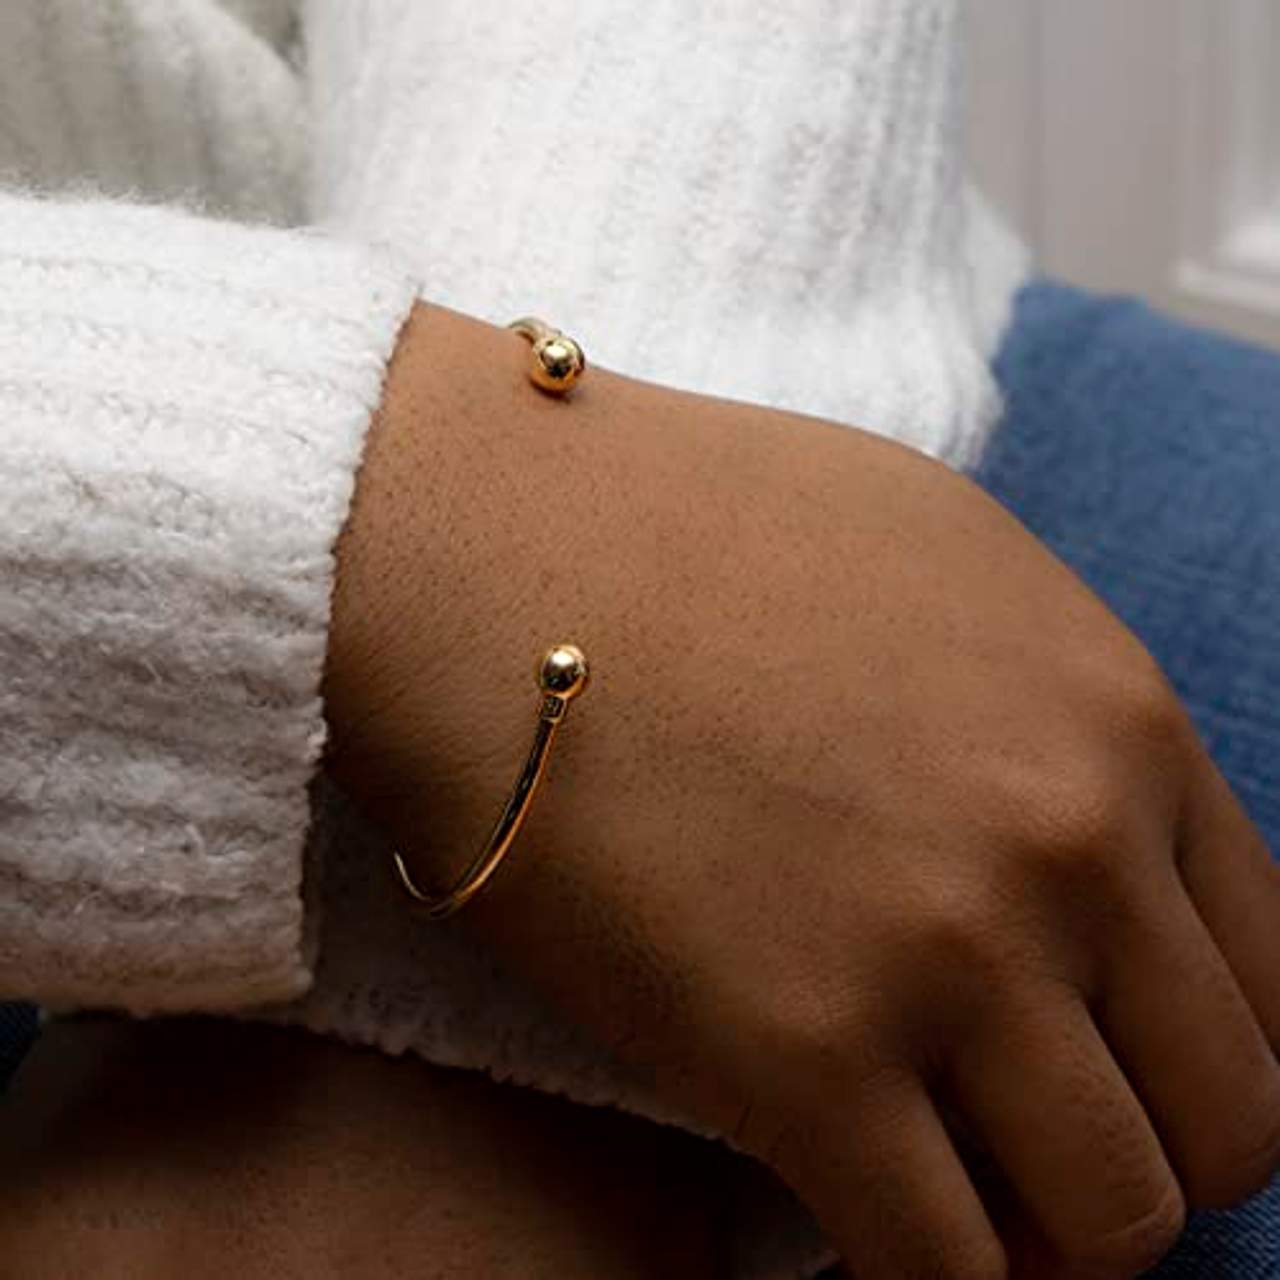 Carissima Gold Damen-Armband 9 Karat